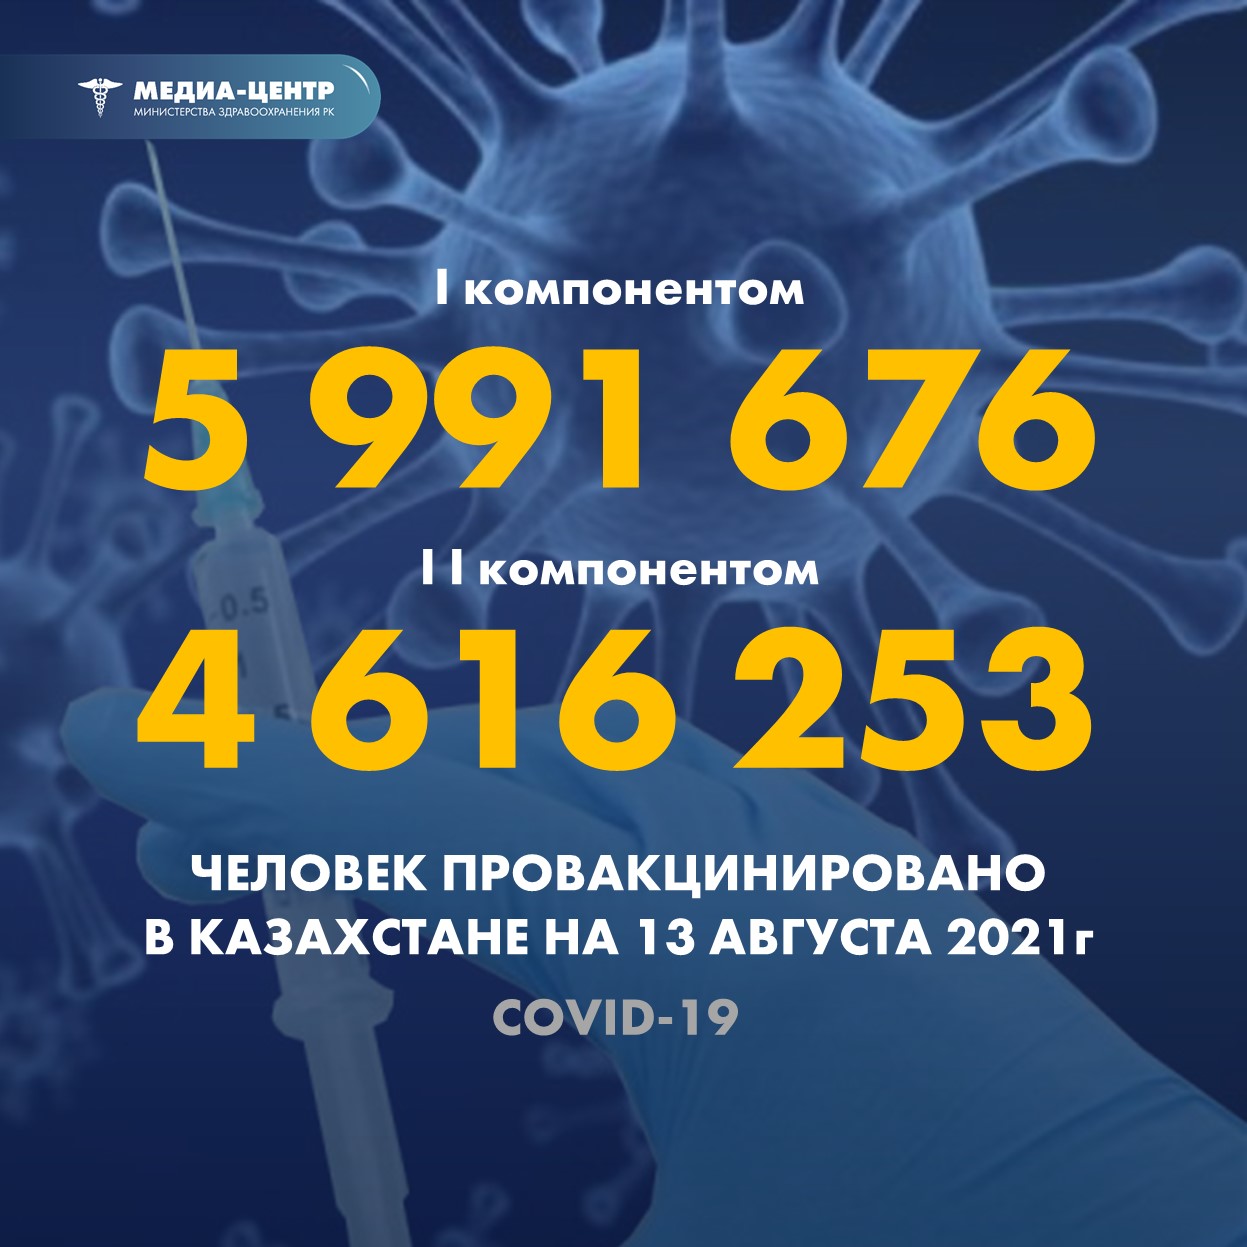 I компонентом 5 991 676 человек провакцинировано в Казахстане на 13 августа 2021 г, II компонентом 4 616 253 человек.